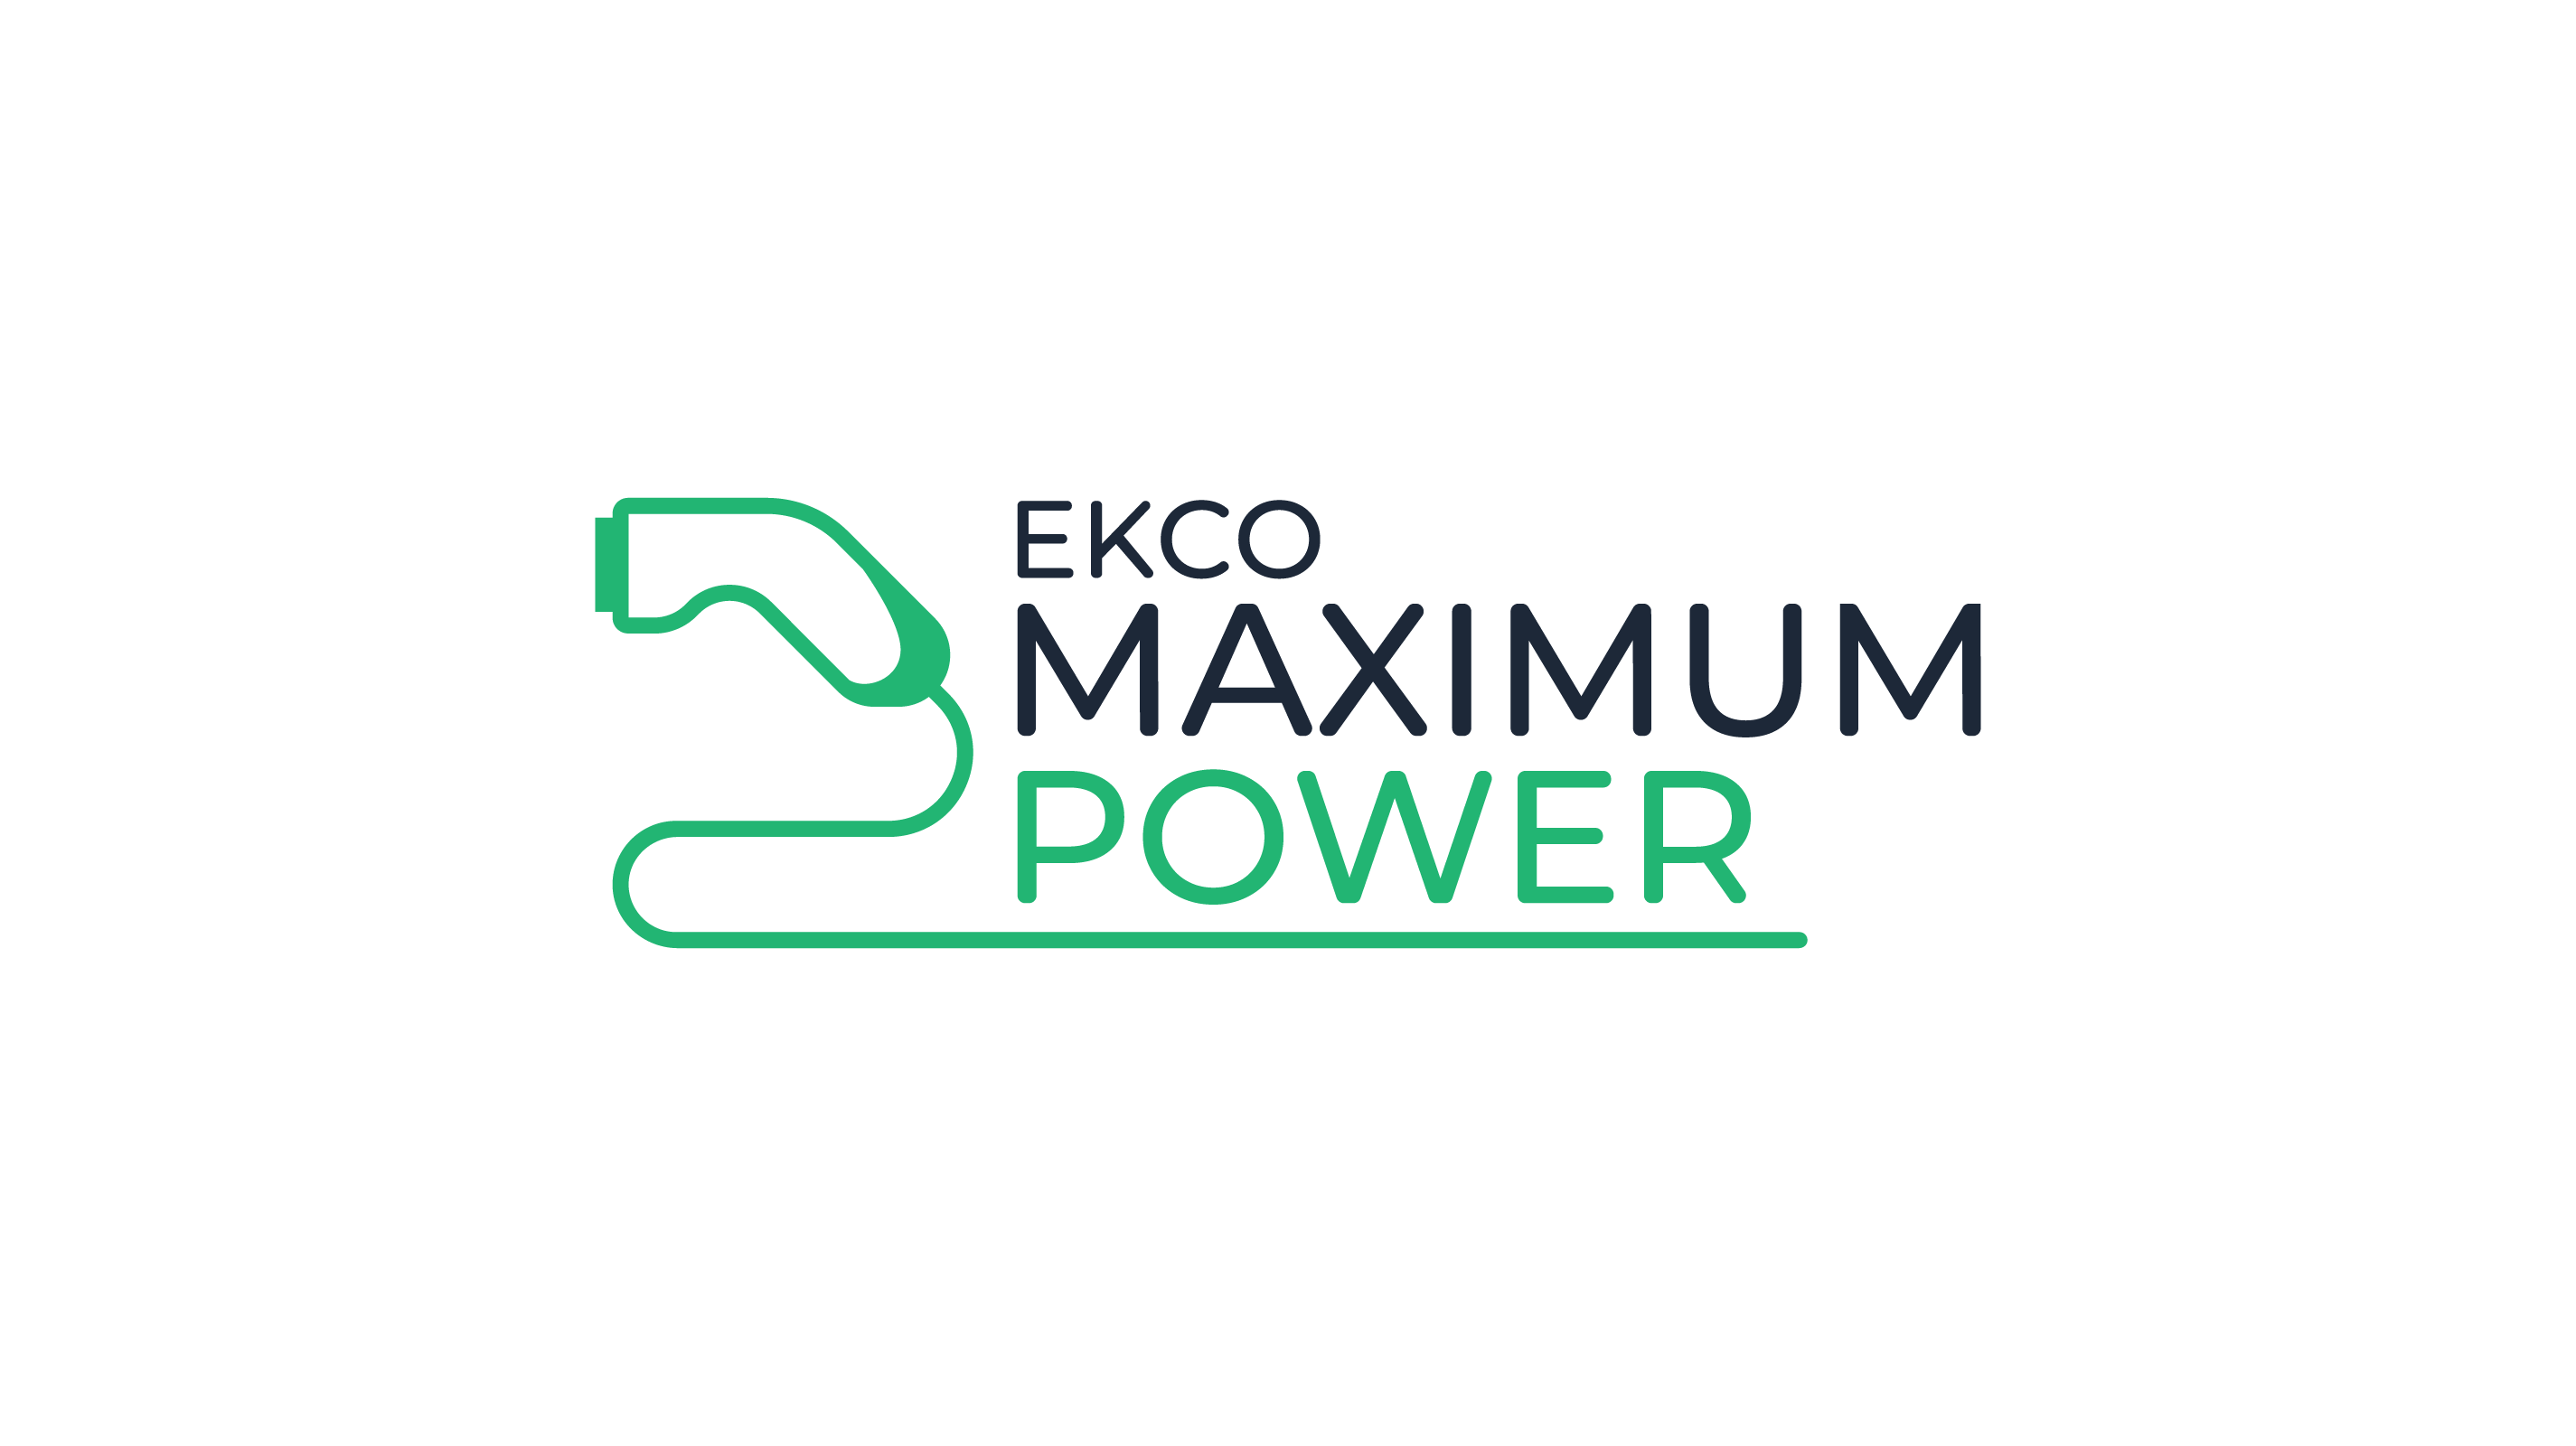 EKCO Maximum Power LTD